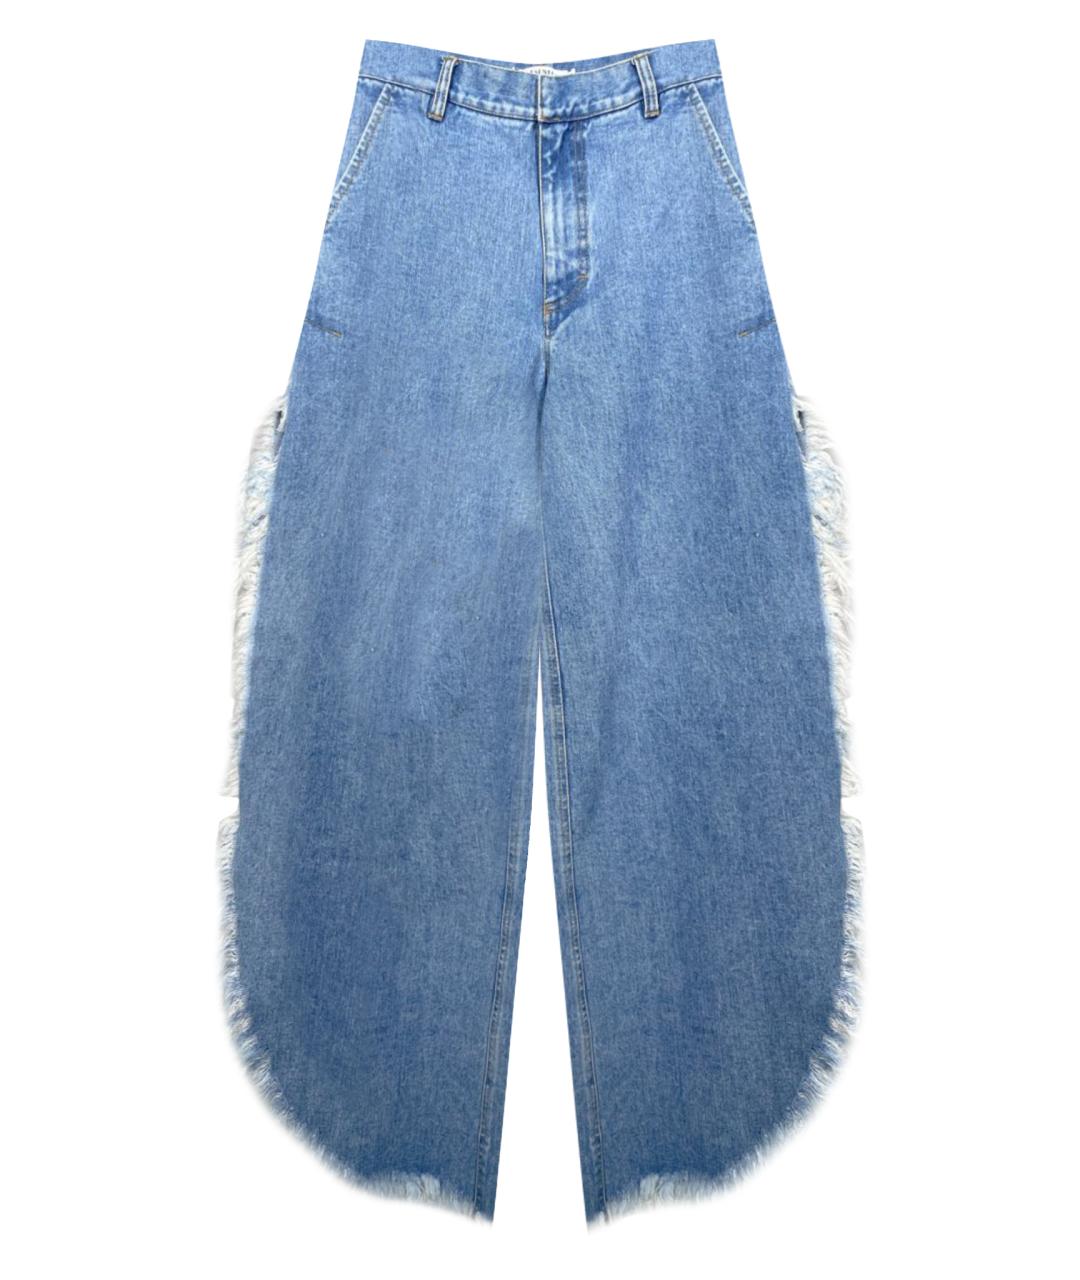 KSENIA SCHNAIDER Голубые хлопковые прямые джинсы, фото 1